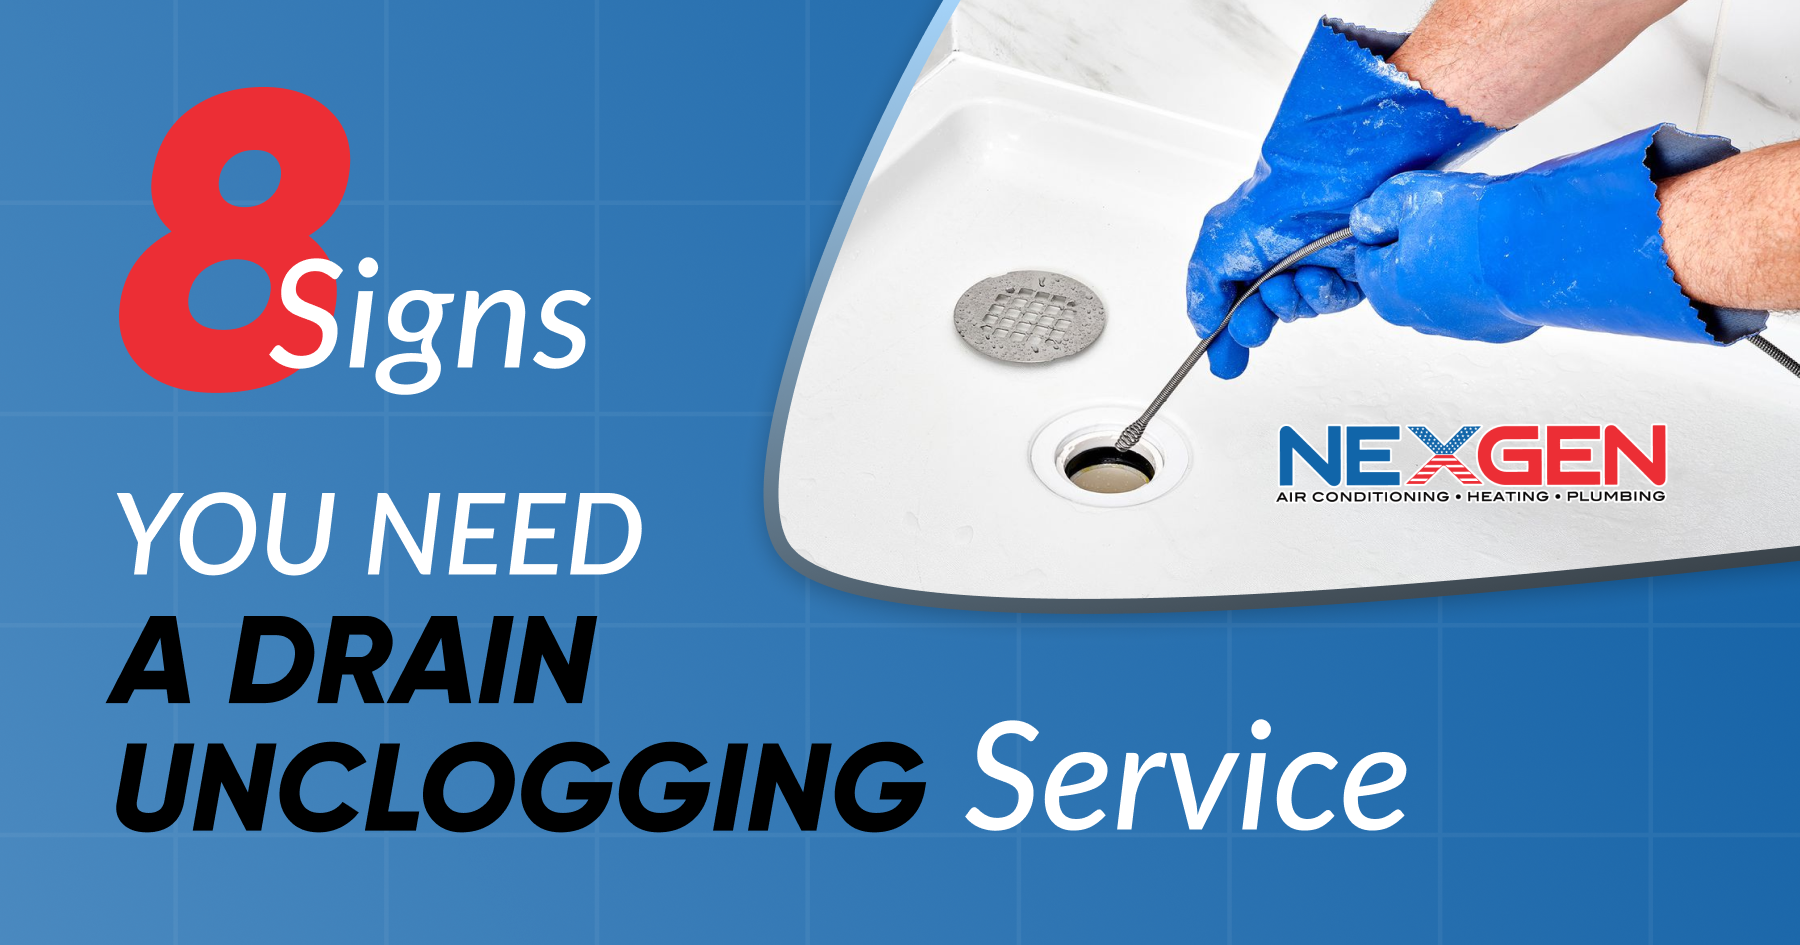 NexGen 8 Signs You Need a Drain Unclogging Service